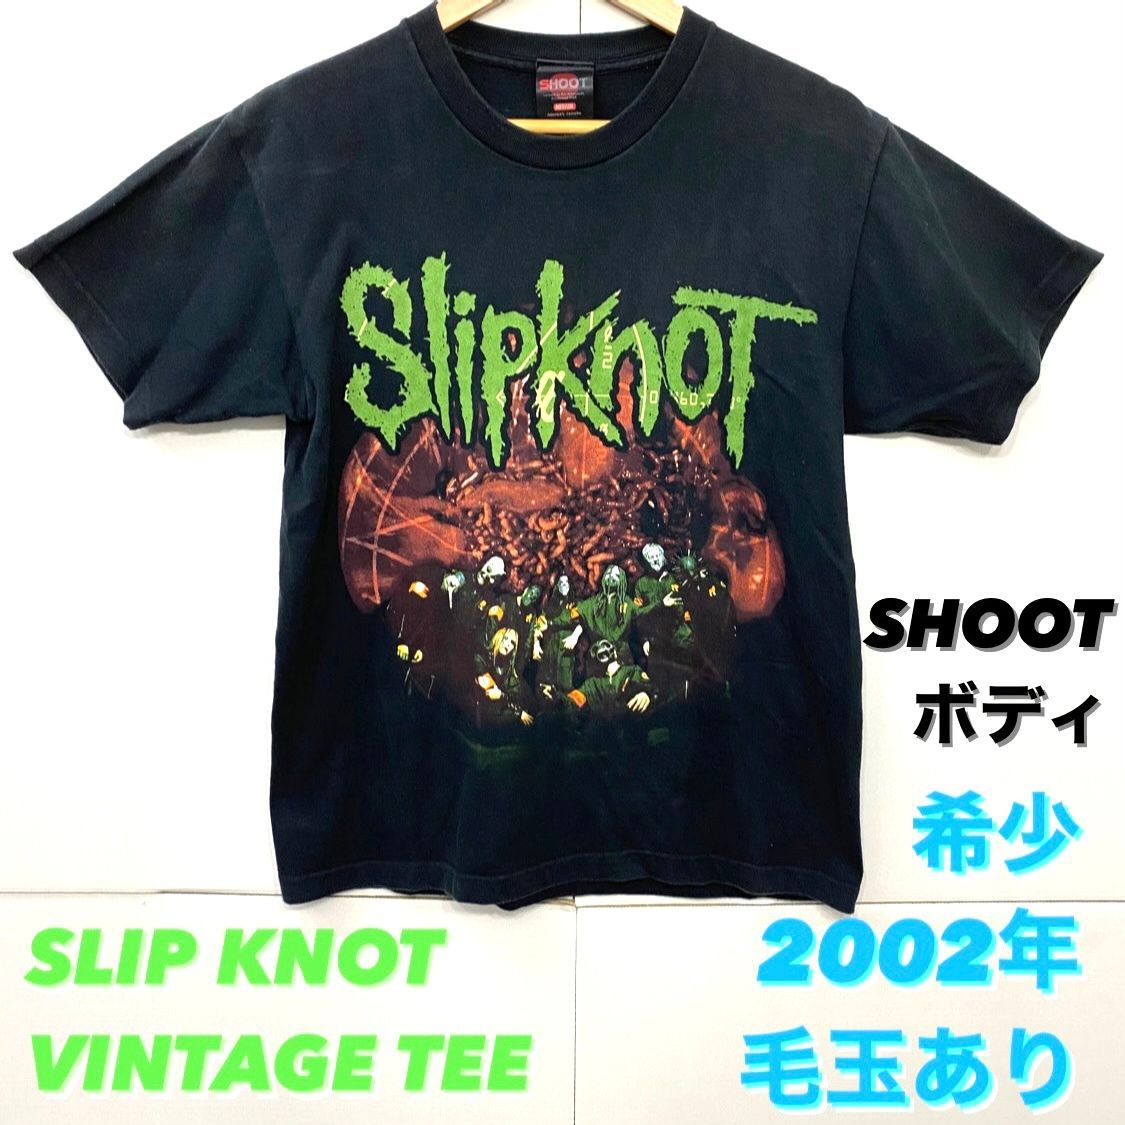 特価イラスト Slipknot Shoot vintage tee スリップノット Tシャツ T